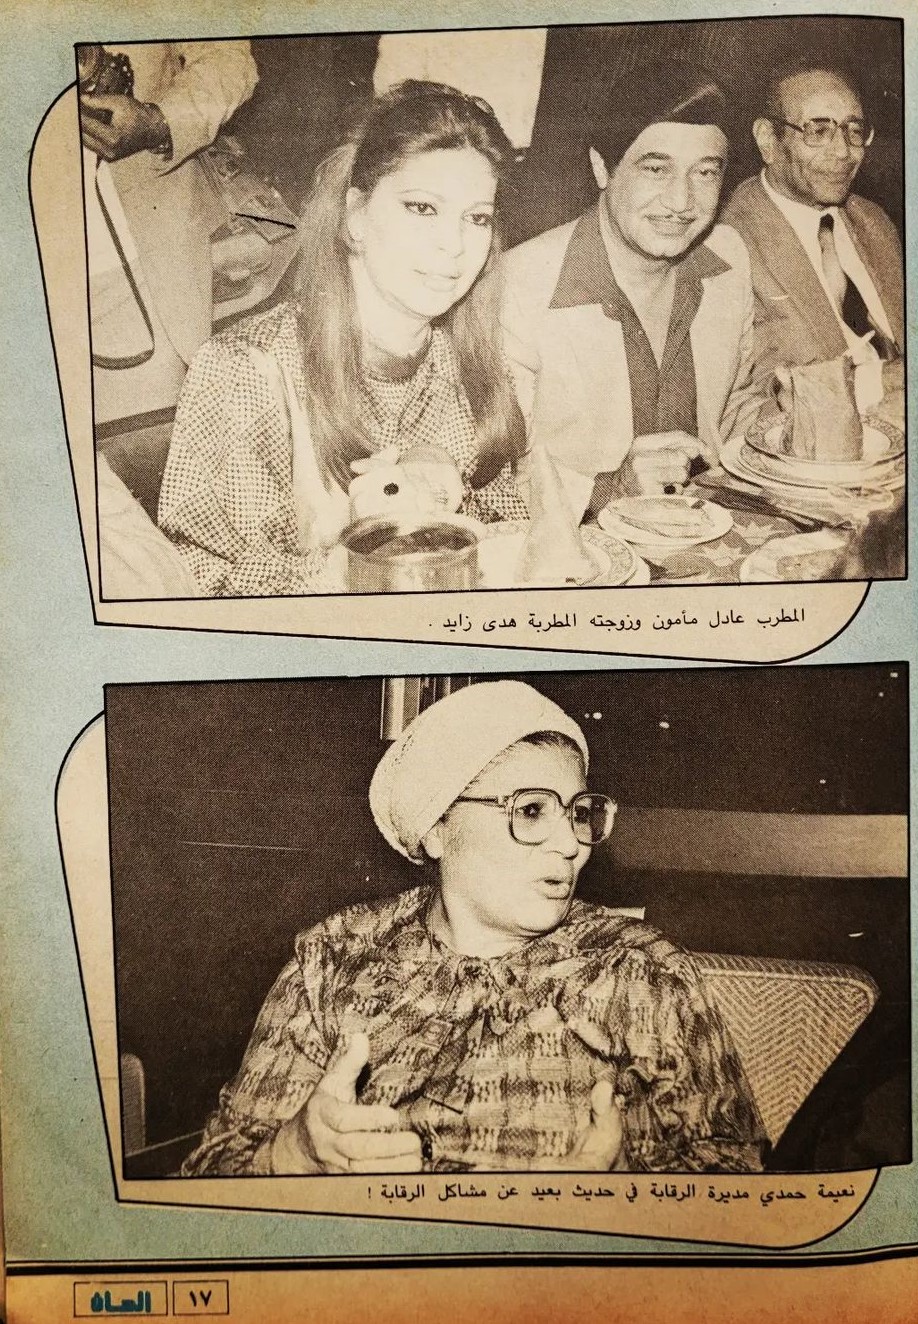 خبر صحفي : سندريللا الشاشتين .. في احتفال جمعية فناني الشاشة الصغيرة 1986 م 440